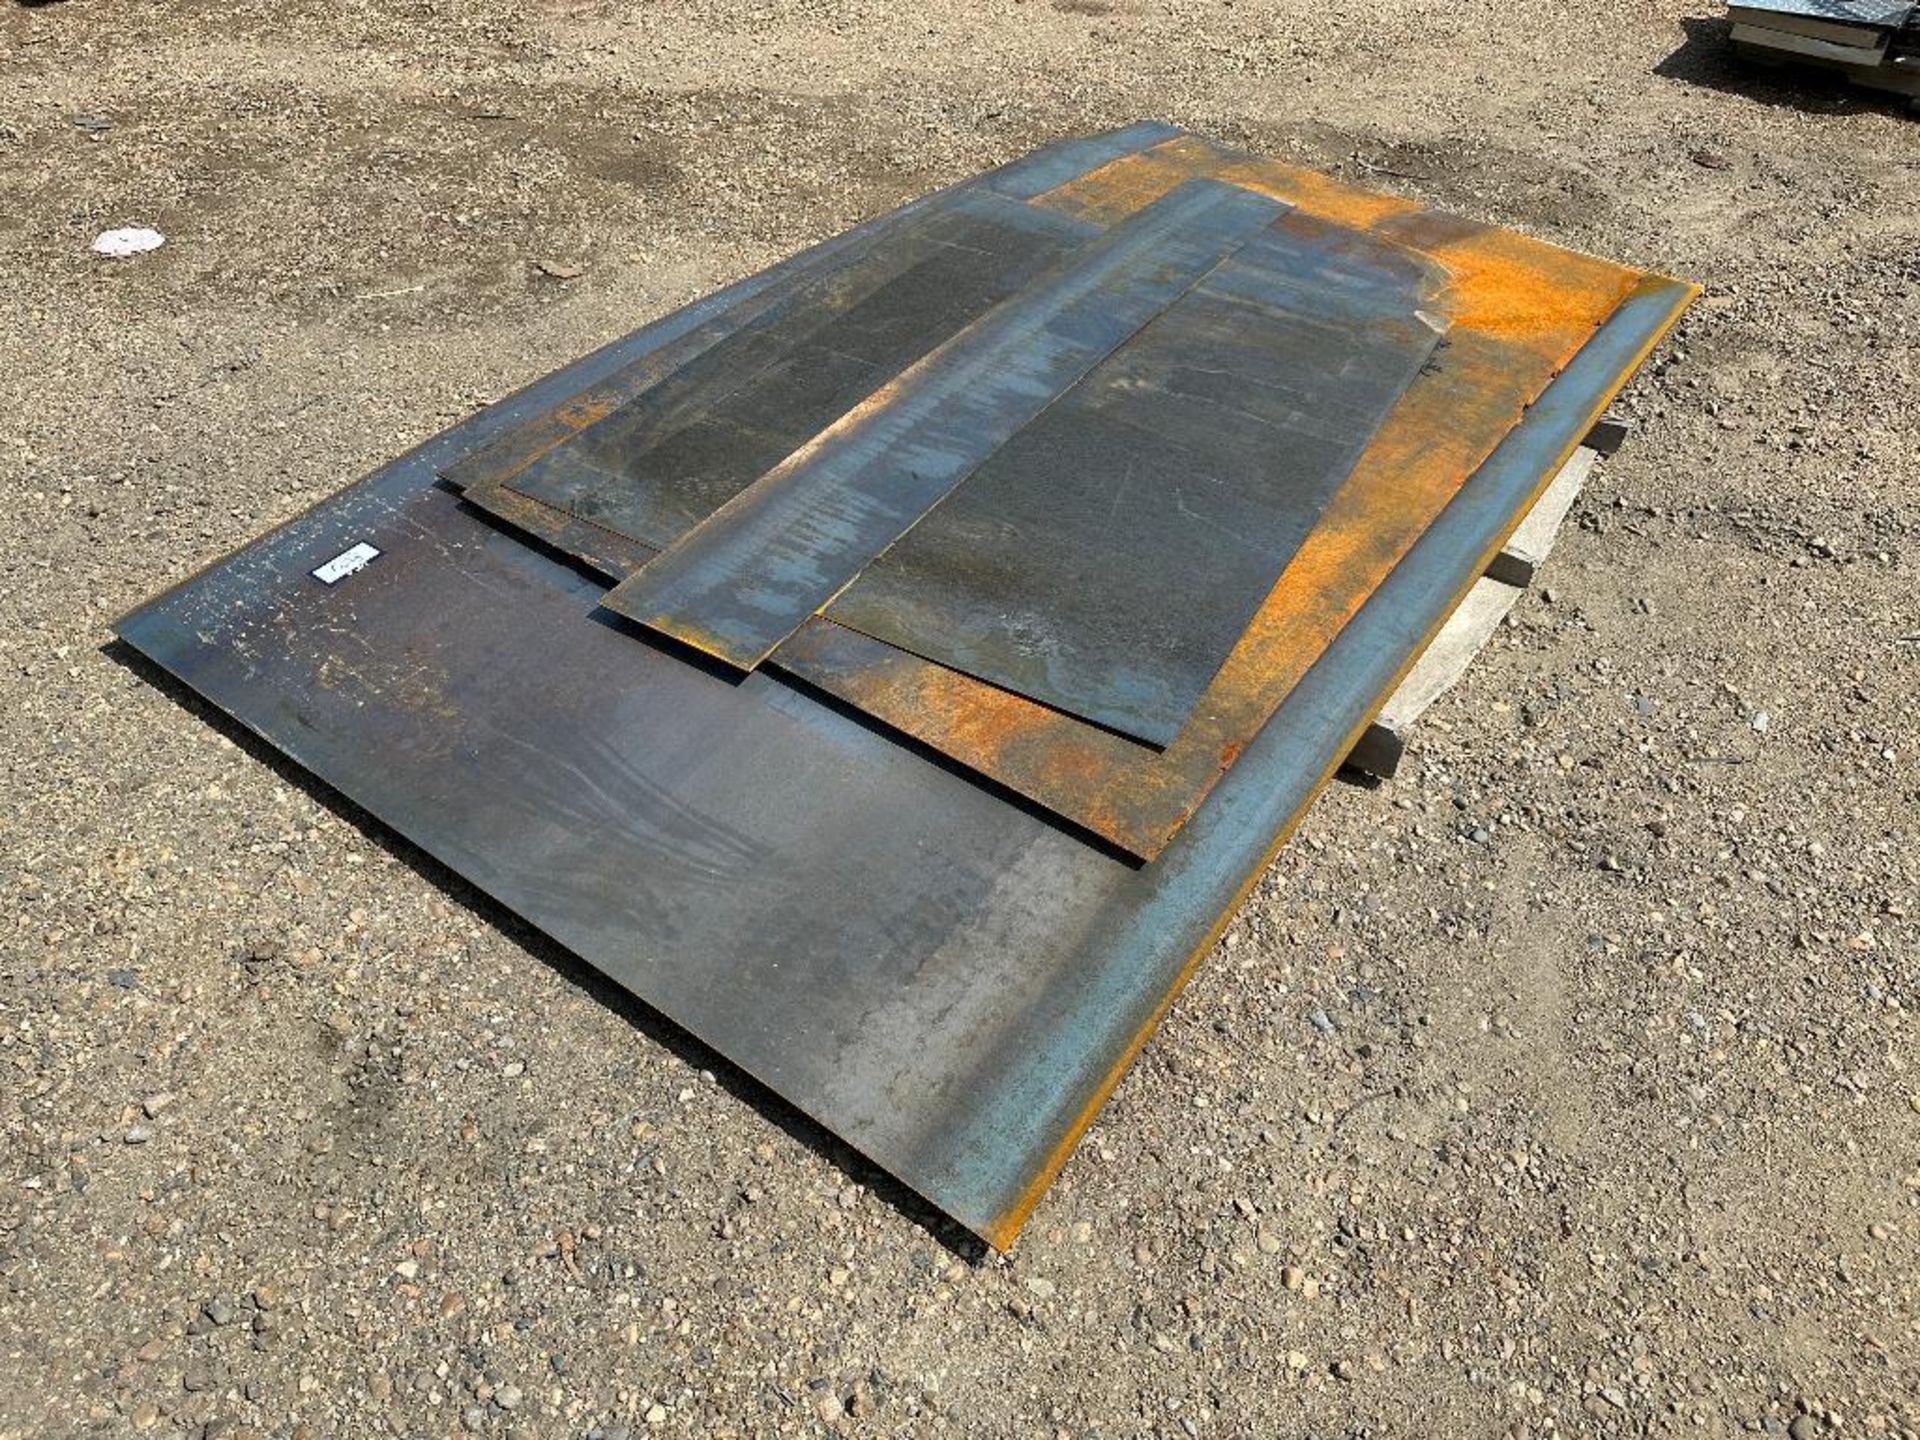 Lot of Asst. Plate Steel including (2) 5’x10’ Sheets and Asst. Cut-Offs